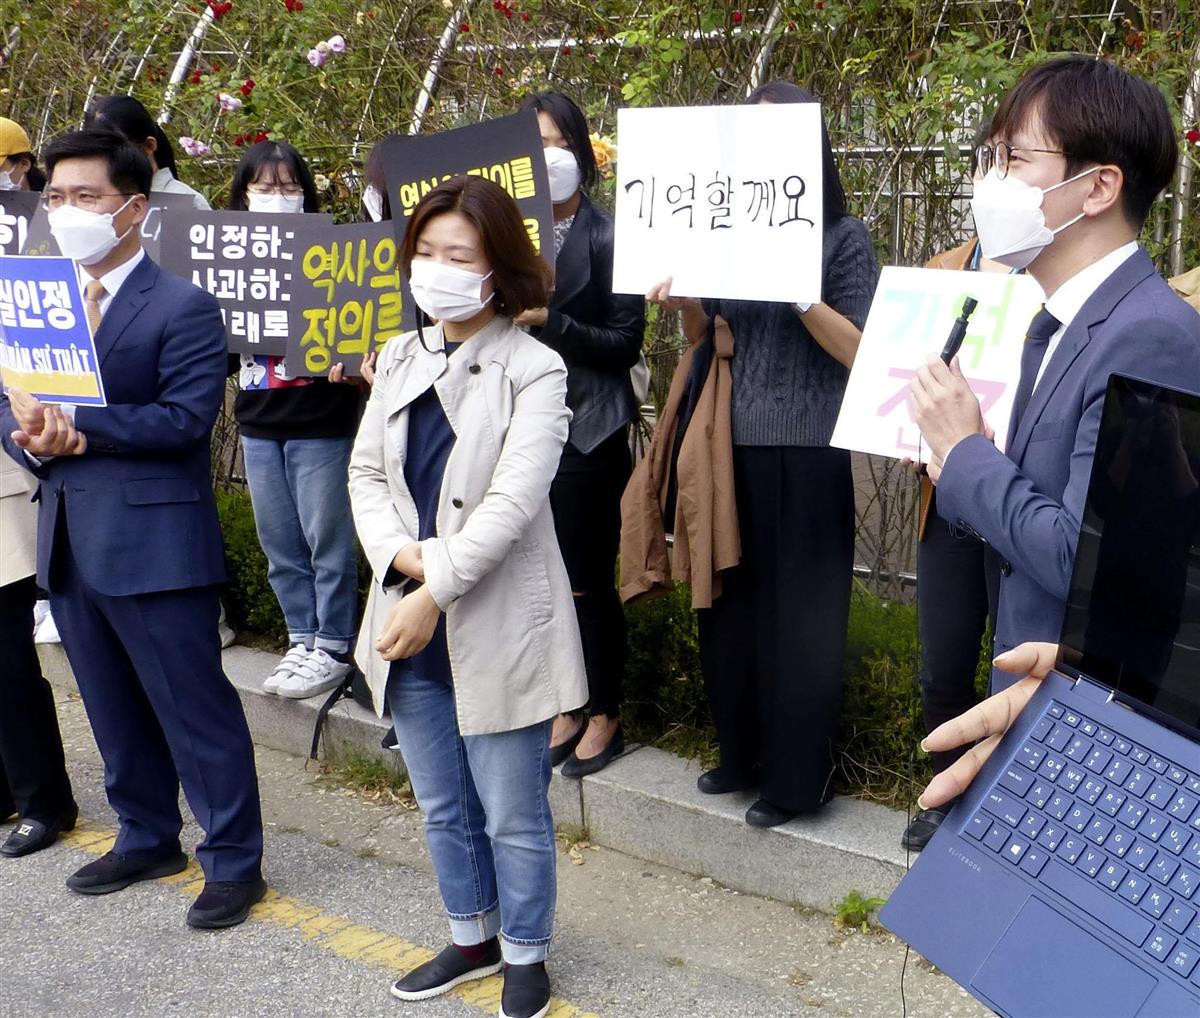 虐殺被害のベトナム人 韓国で初の賠償請求 政権 メディアは対応苦慮 産経ニュース